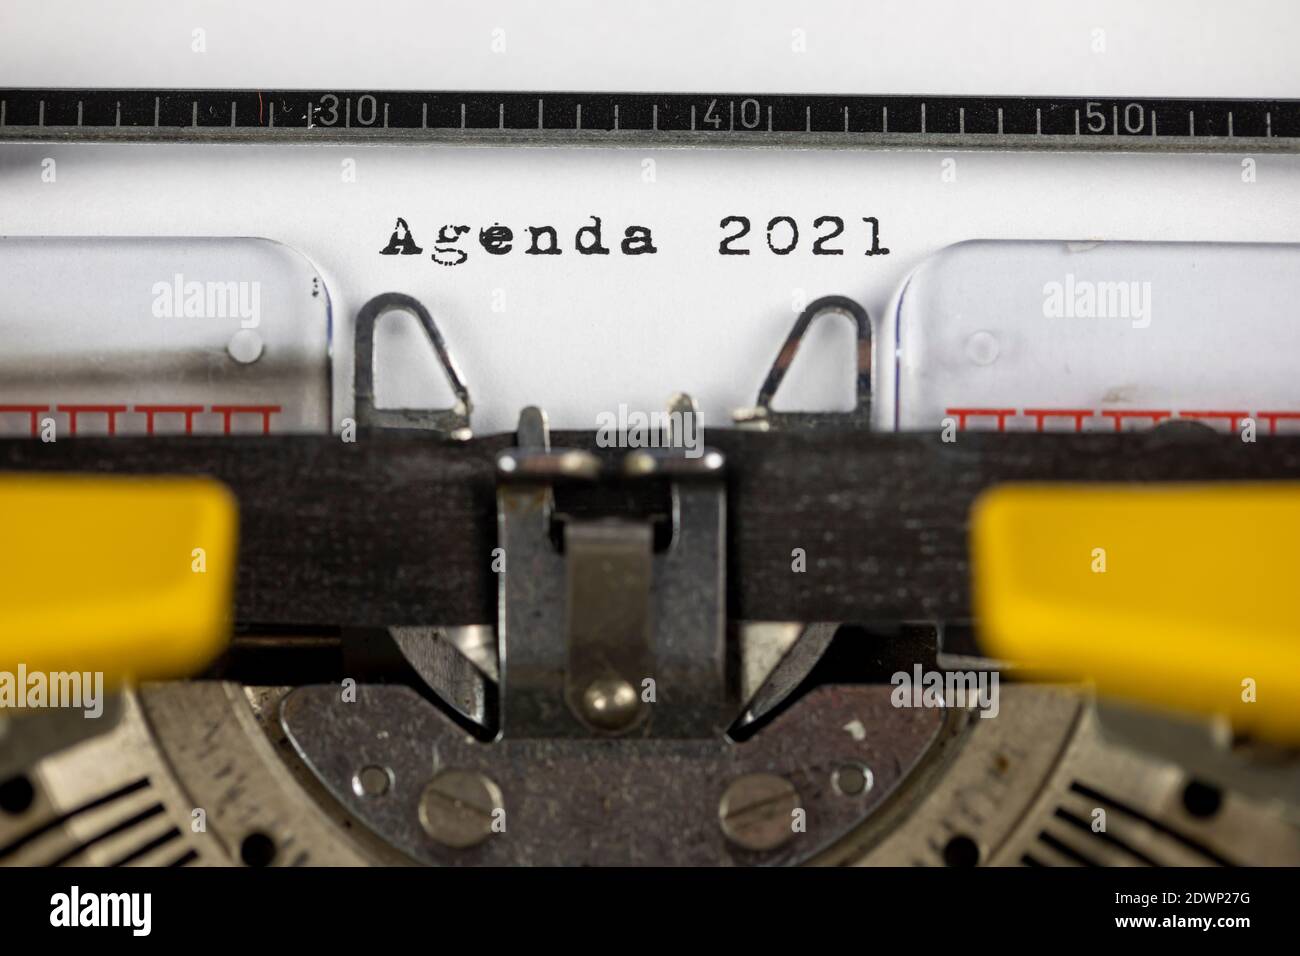 Agenda 2021 écrit sur une vieille machine à écrire Banque D'Images